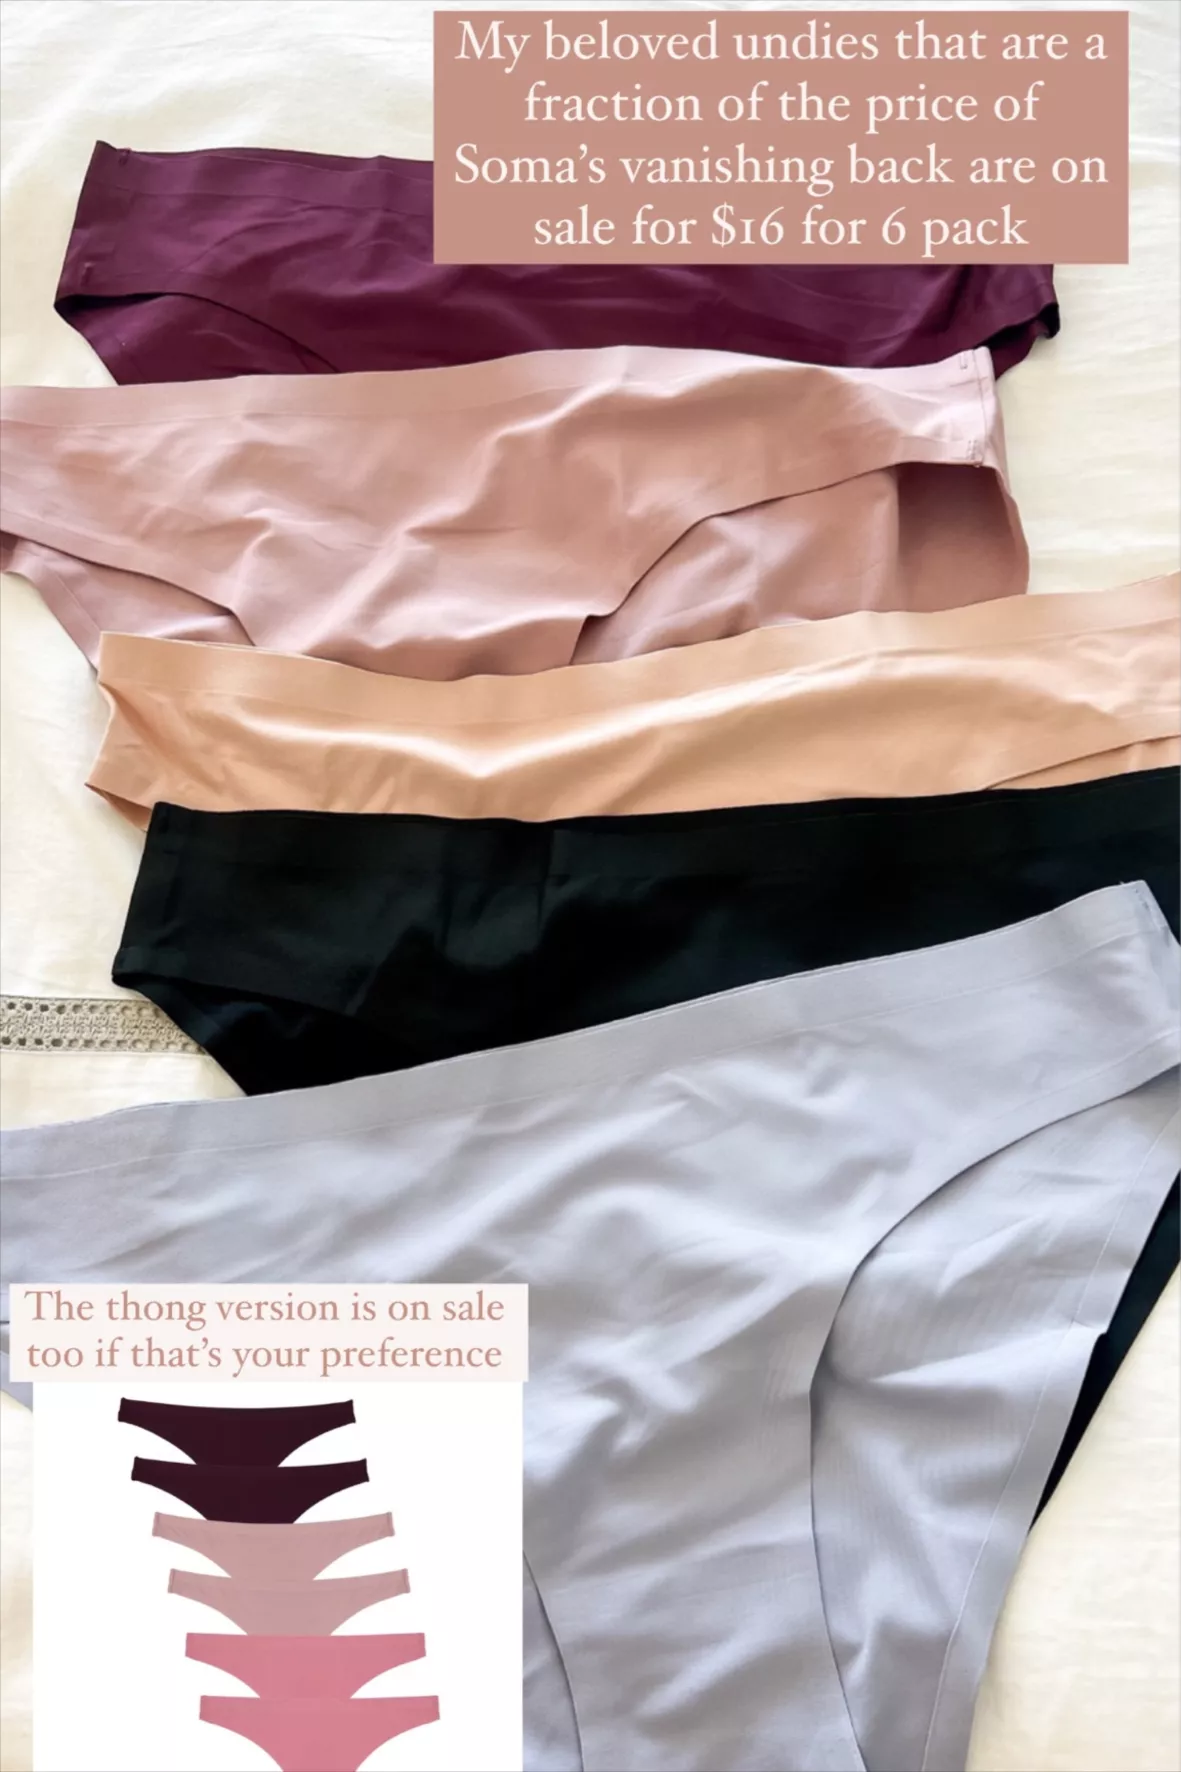 FINETOO Tummy Control Underwear … curated on LTK